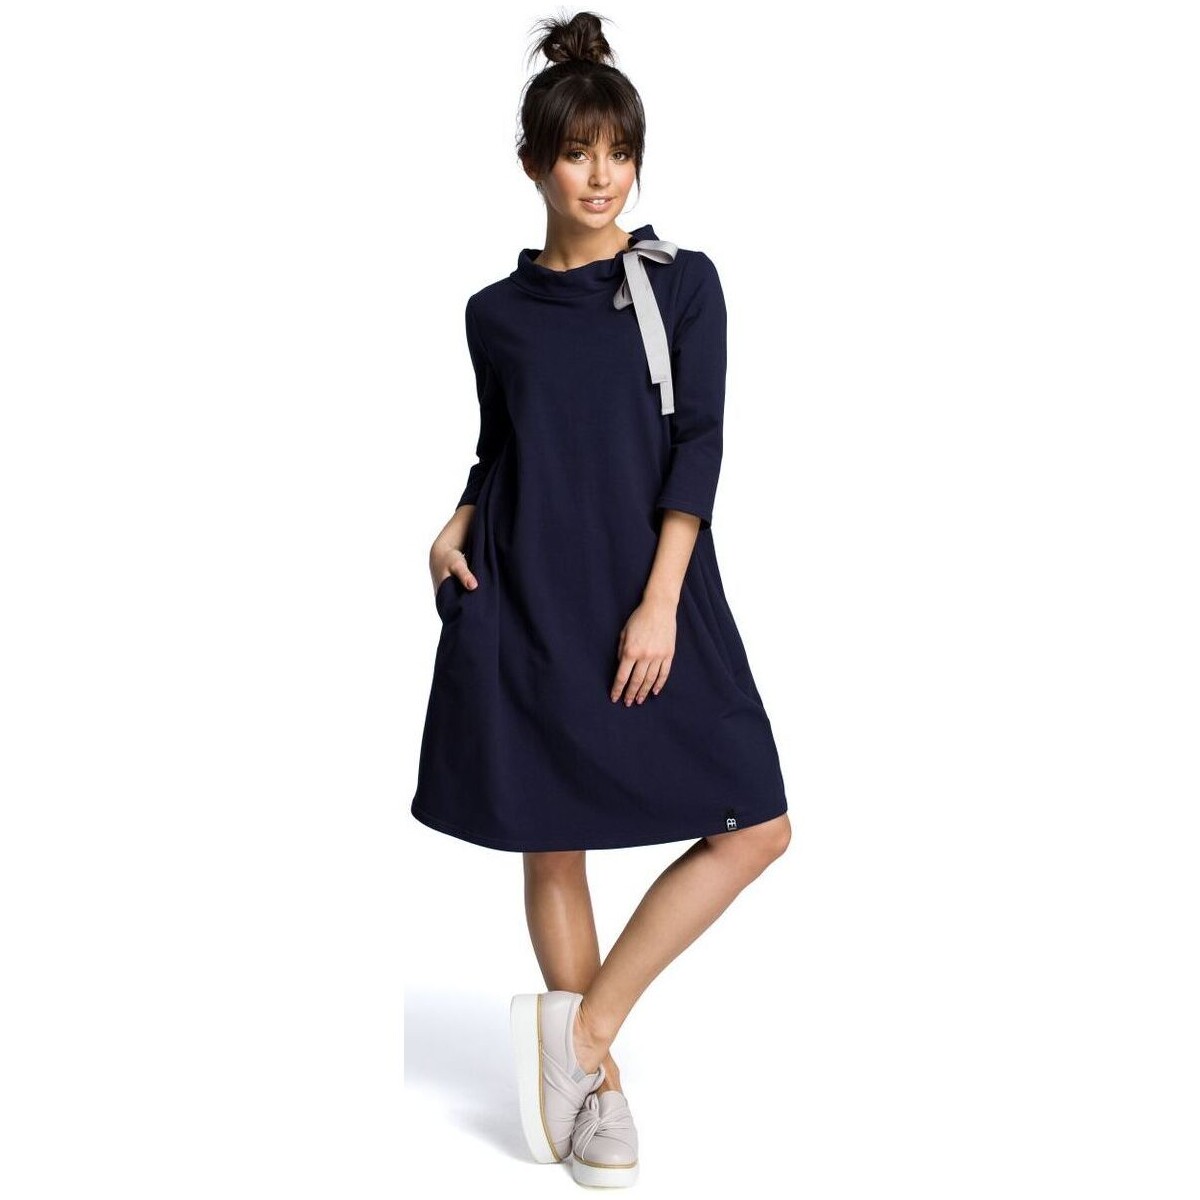 Textil Ženy Krátké šaty Bewear Dámské mini šaty Willibrord B070 tmavě modrá Tmavě modrá